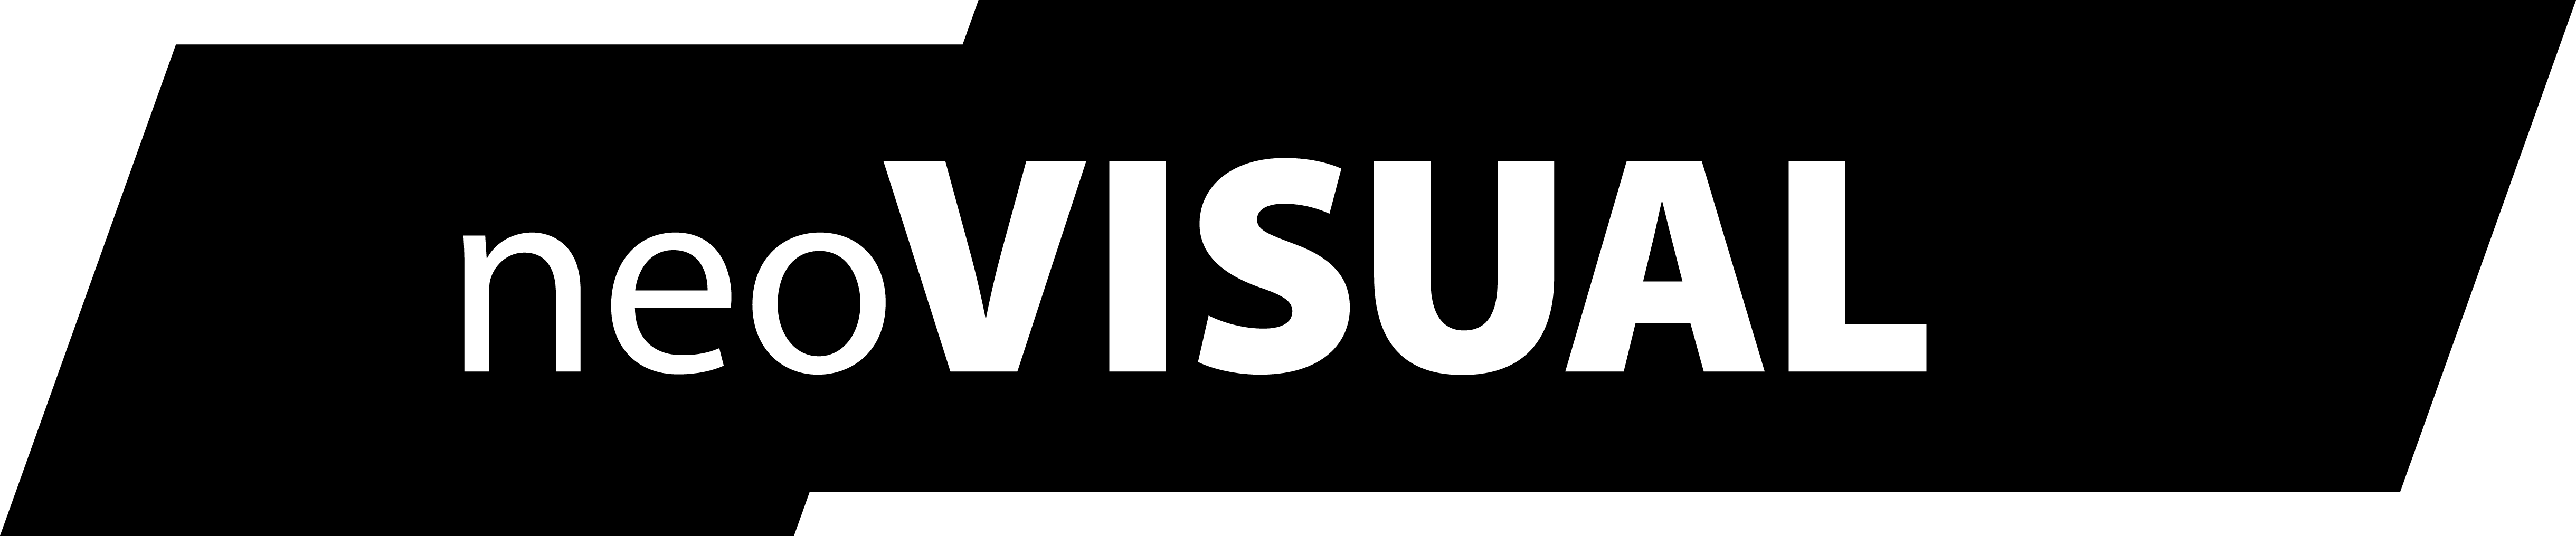 neovisual_logo